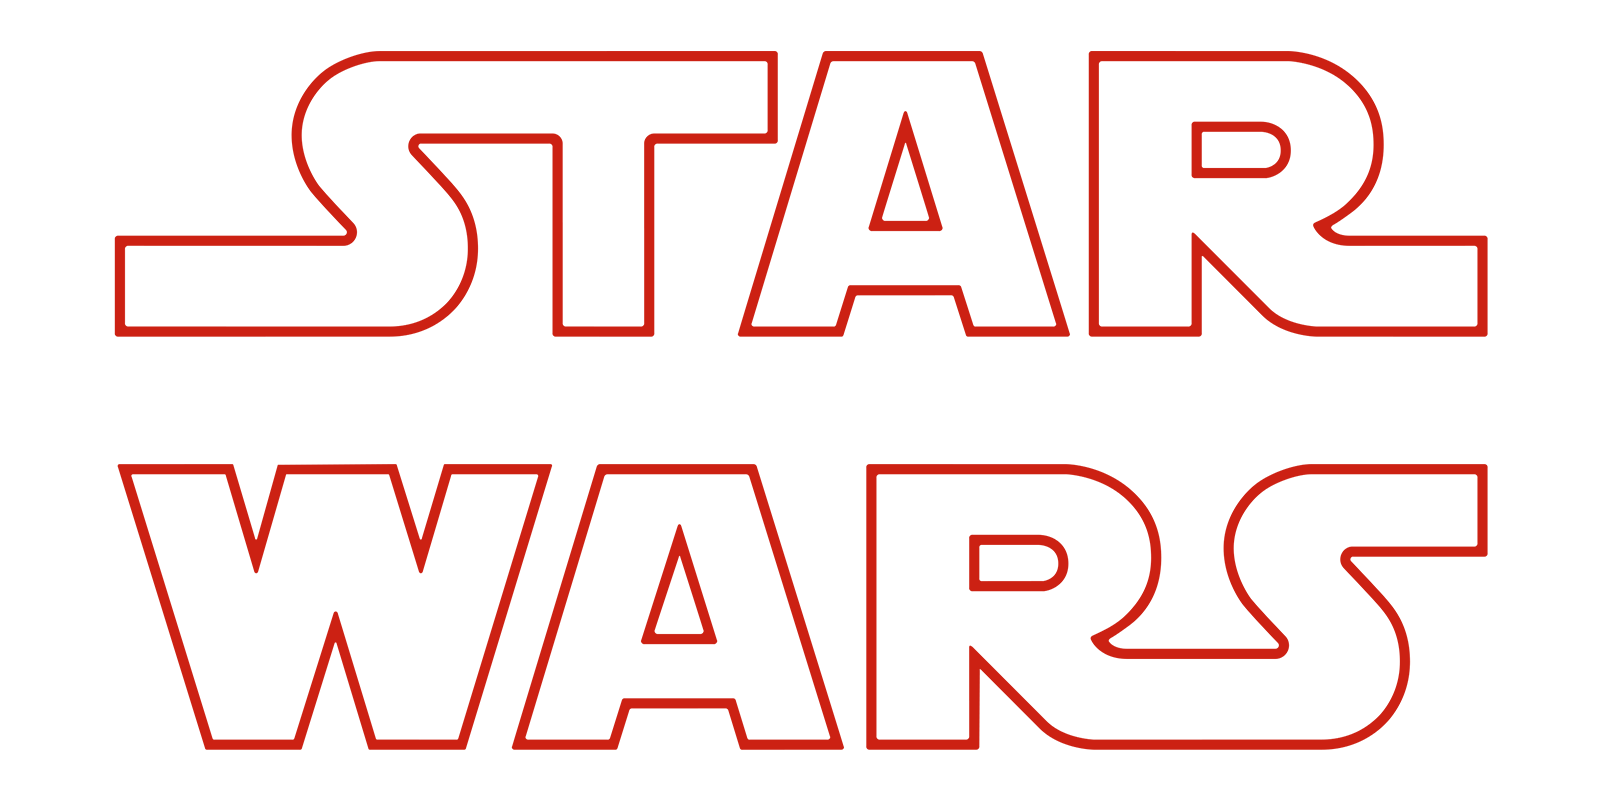 star wars the last jedi full movie